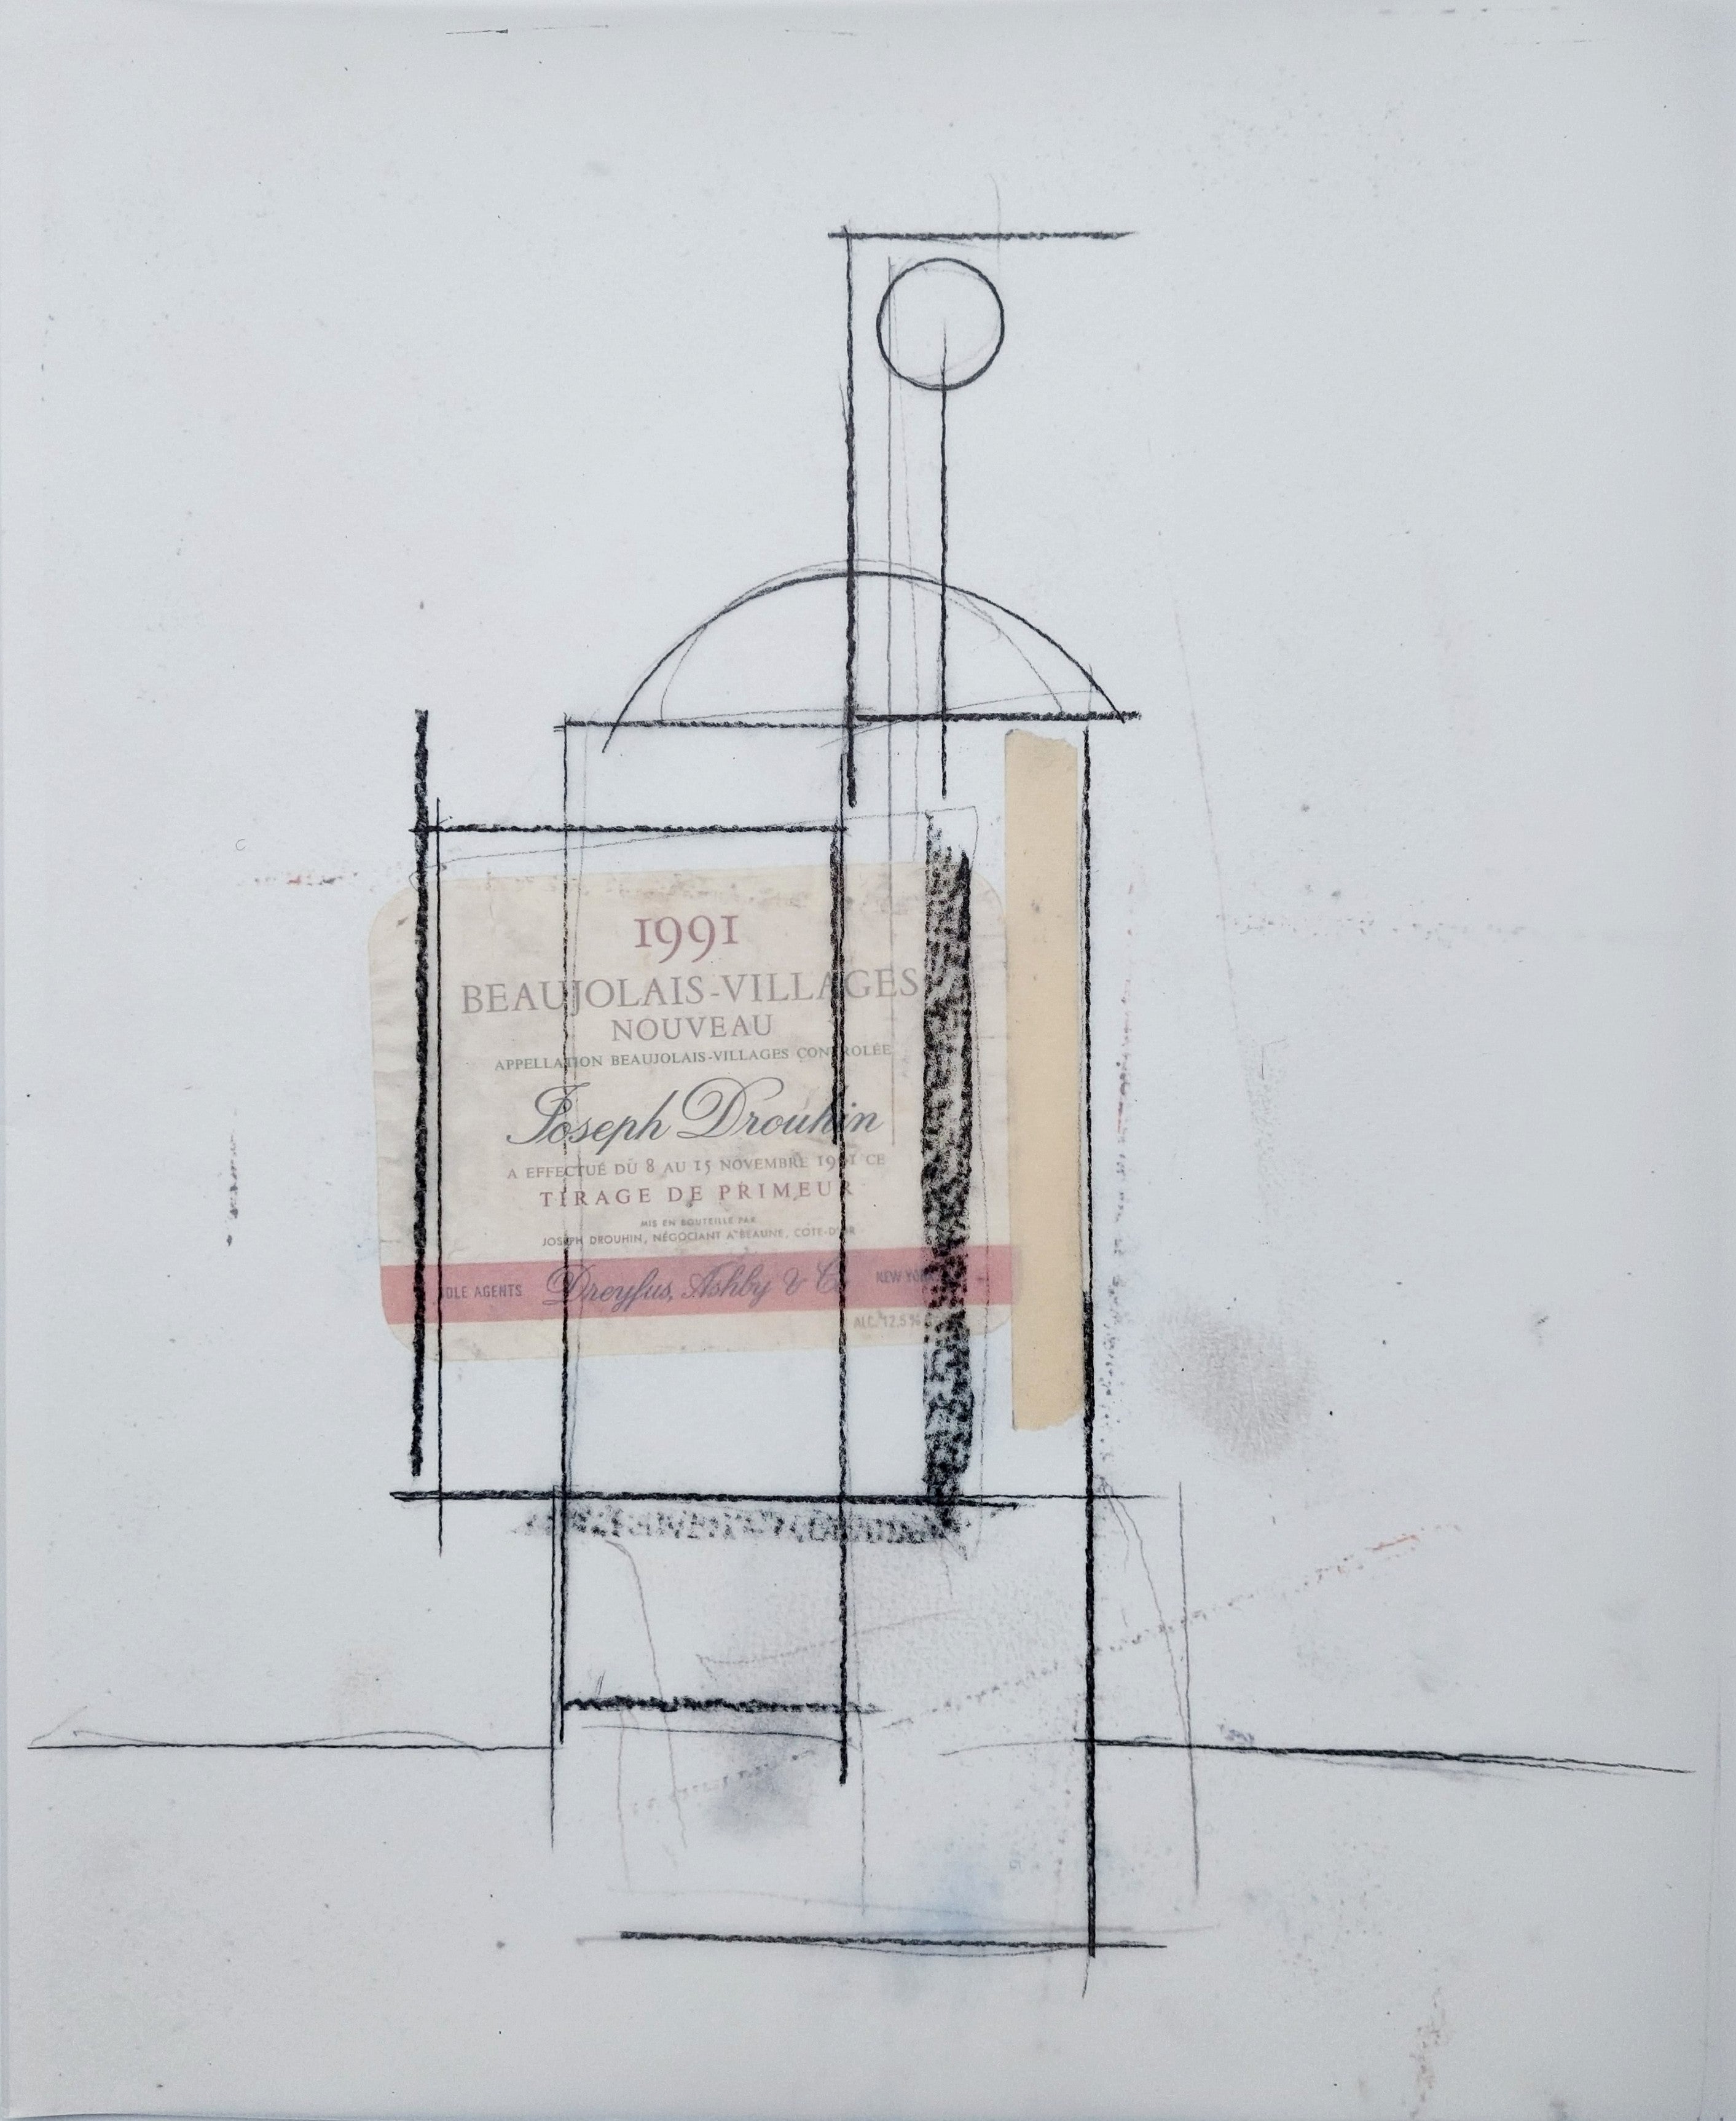 Manolo VALDÉS. El cubismo como pretexto II, 2005. Impresión digital